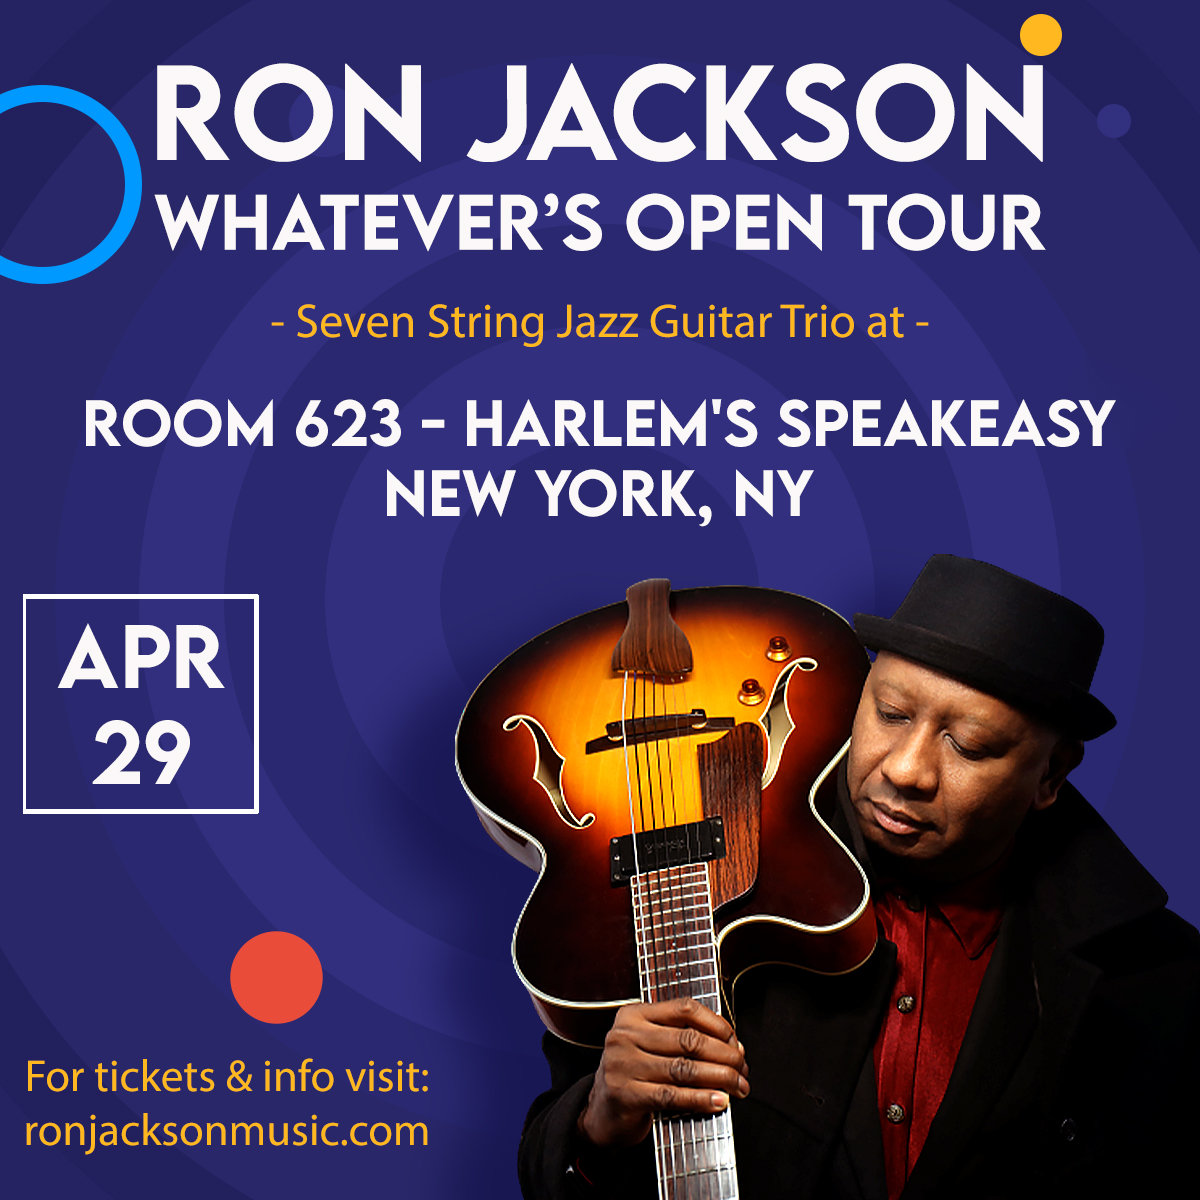 Ron jackson Tour_24